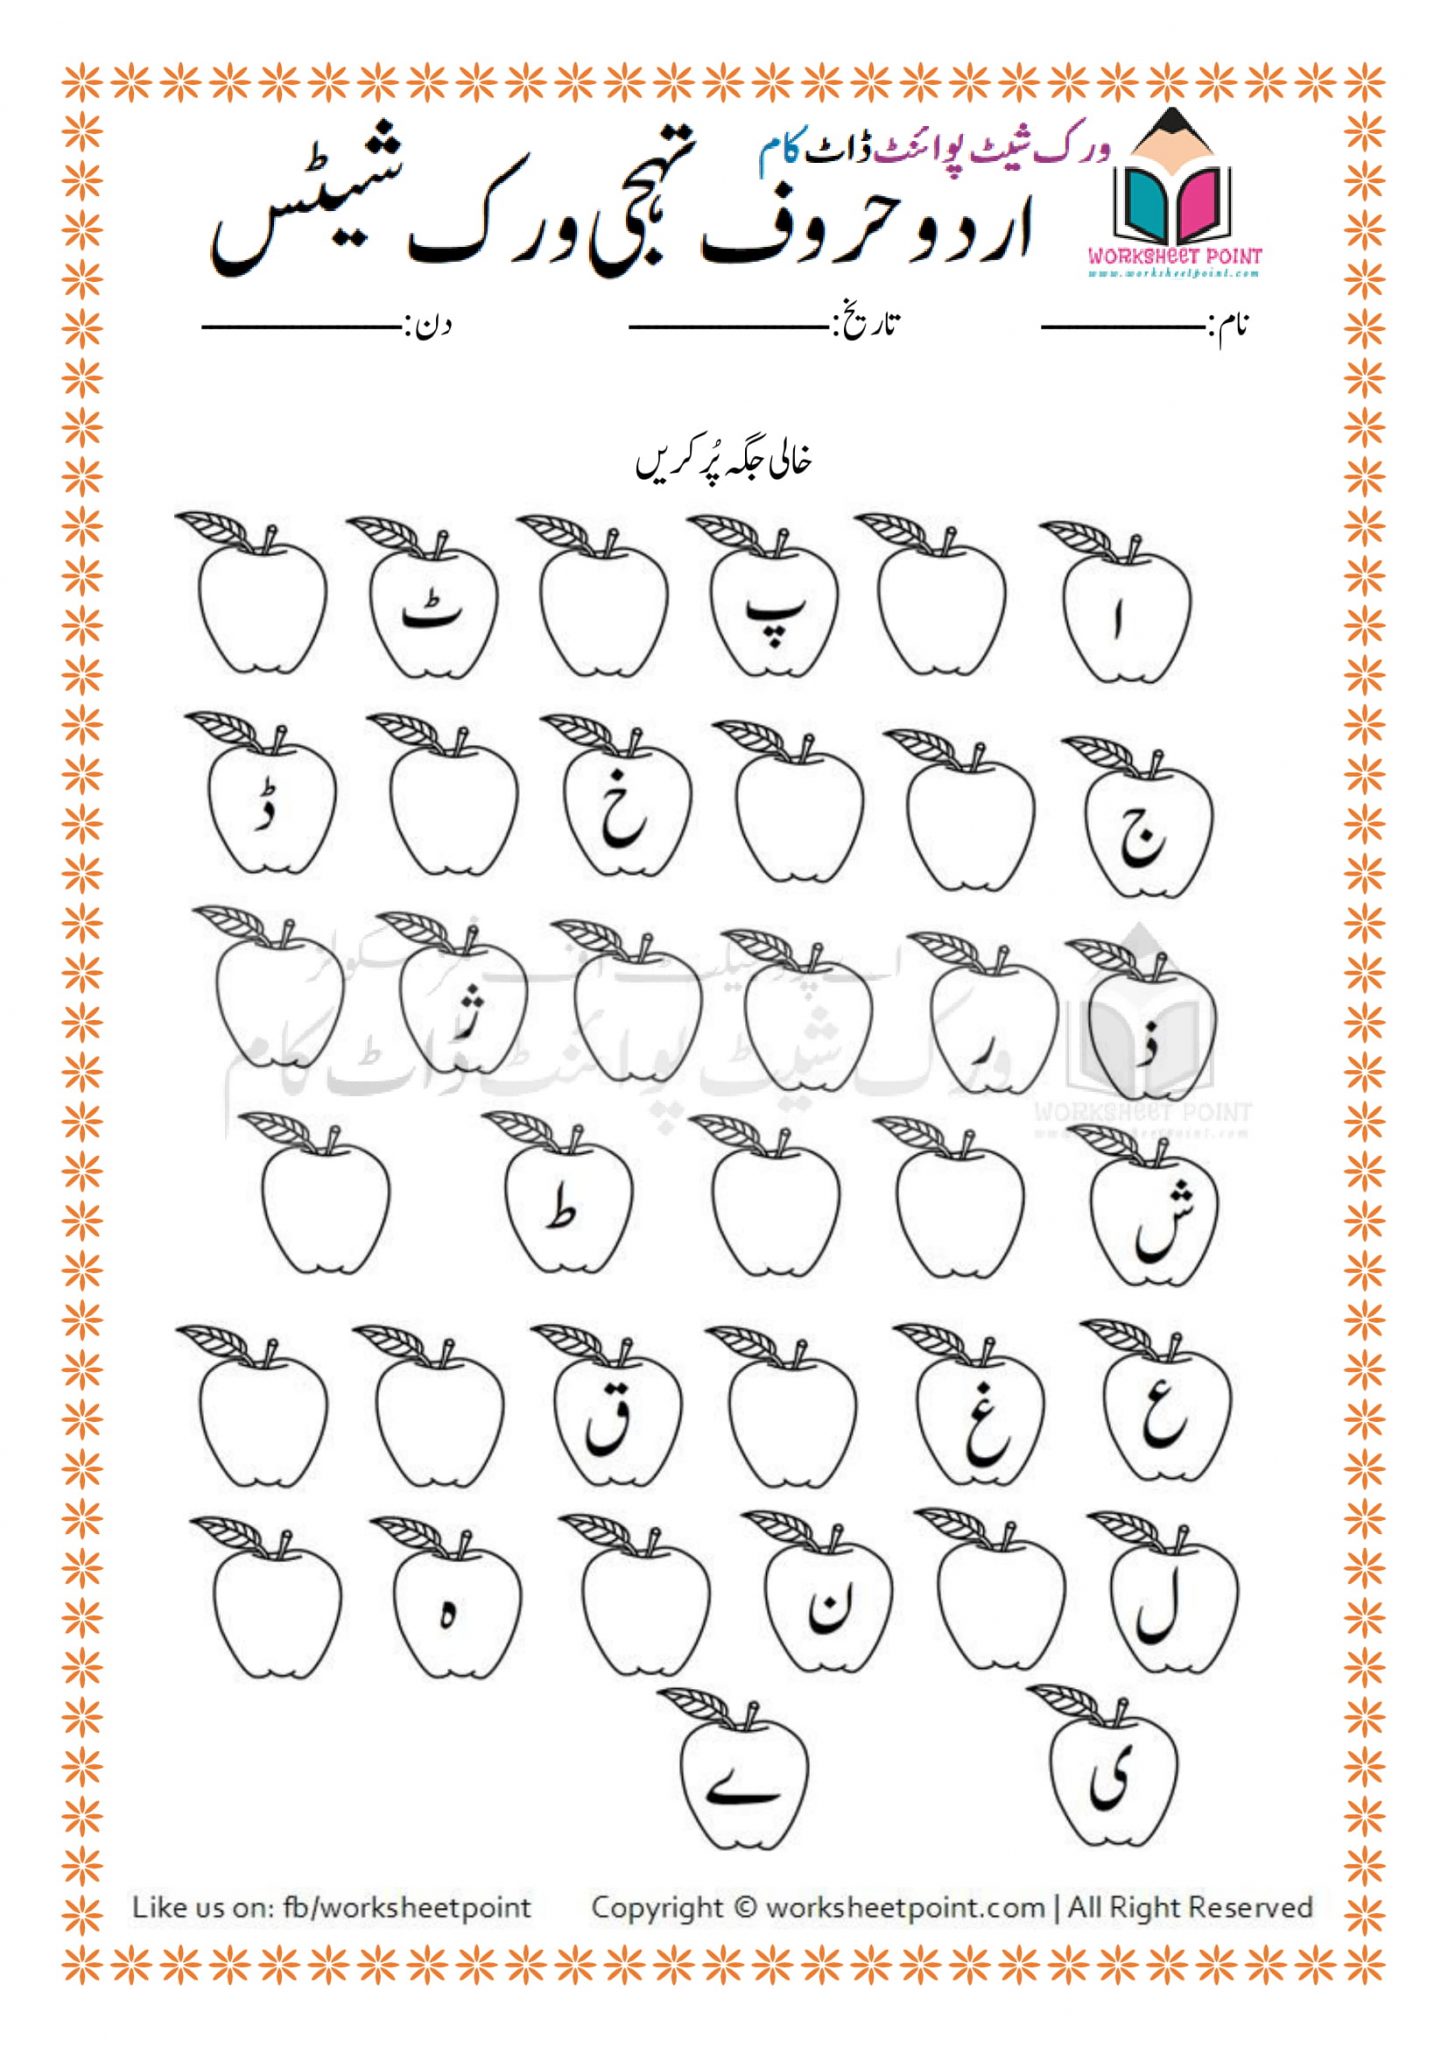 Urdu Alphabets Worksheets For Kids